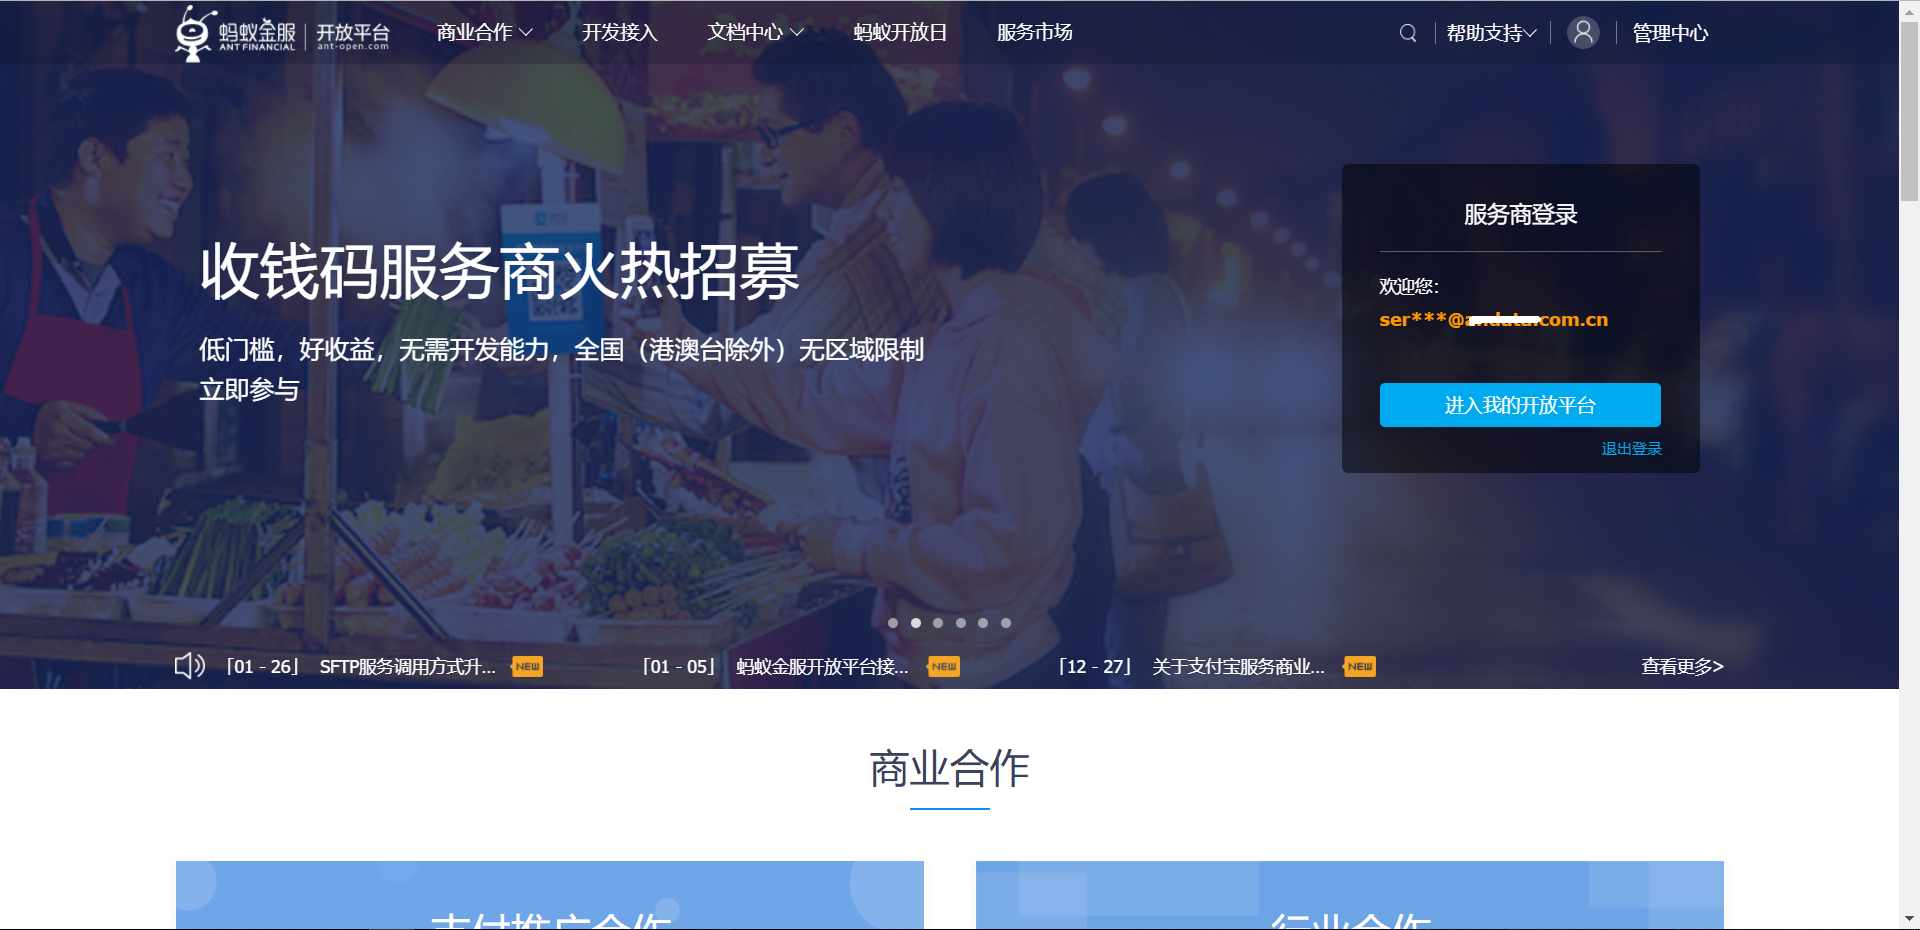 Register company Alipay account